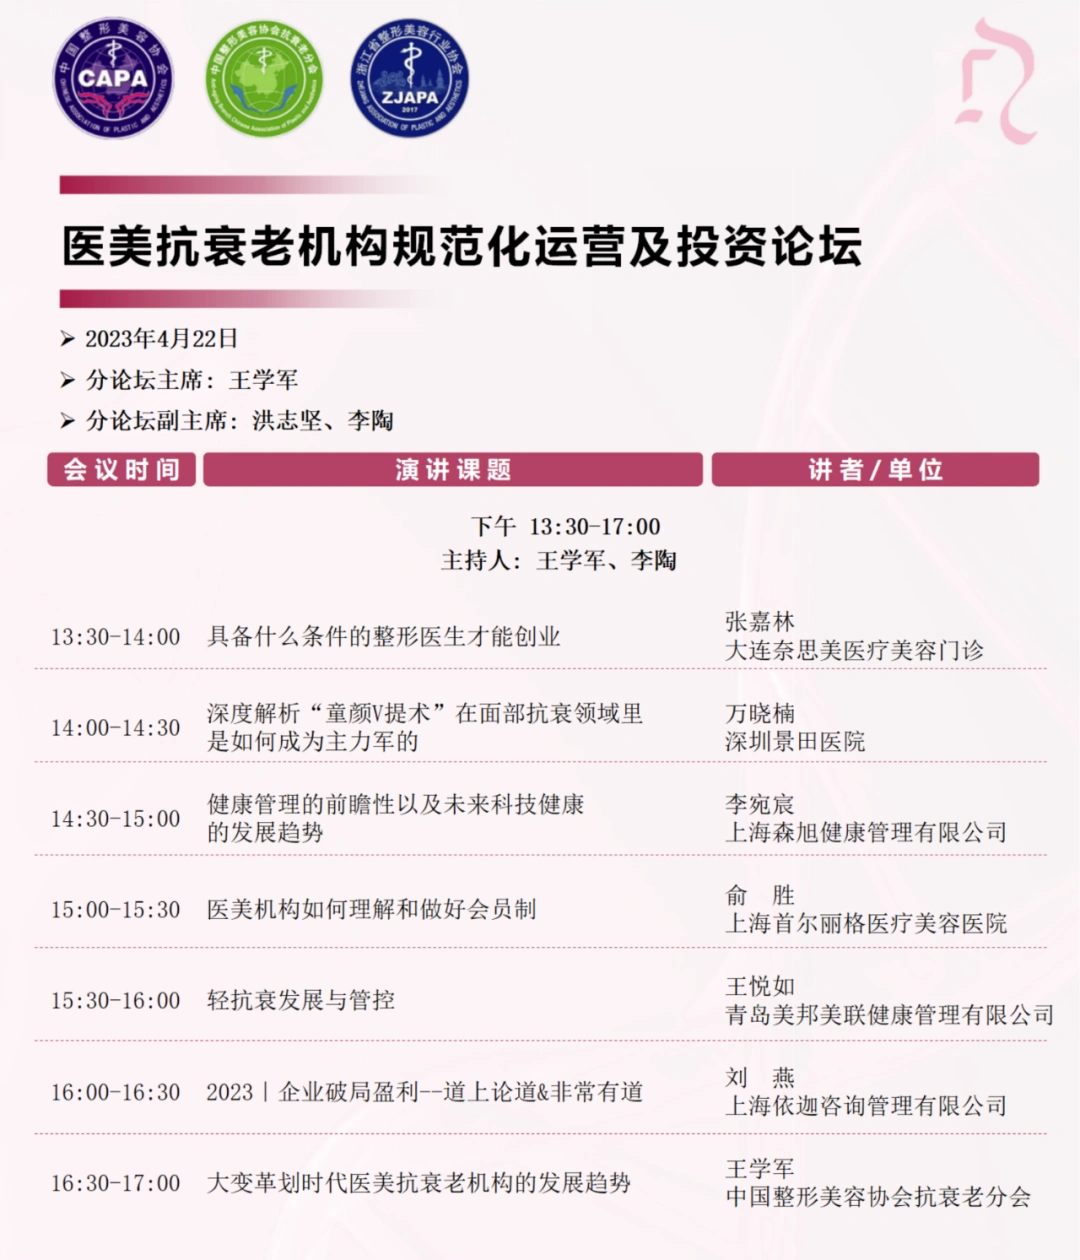 第八届中国抗衰老医学大会暨抗衰老产品博览会第三轮通知